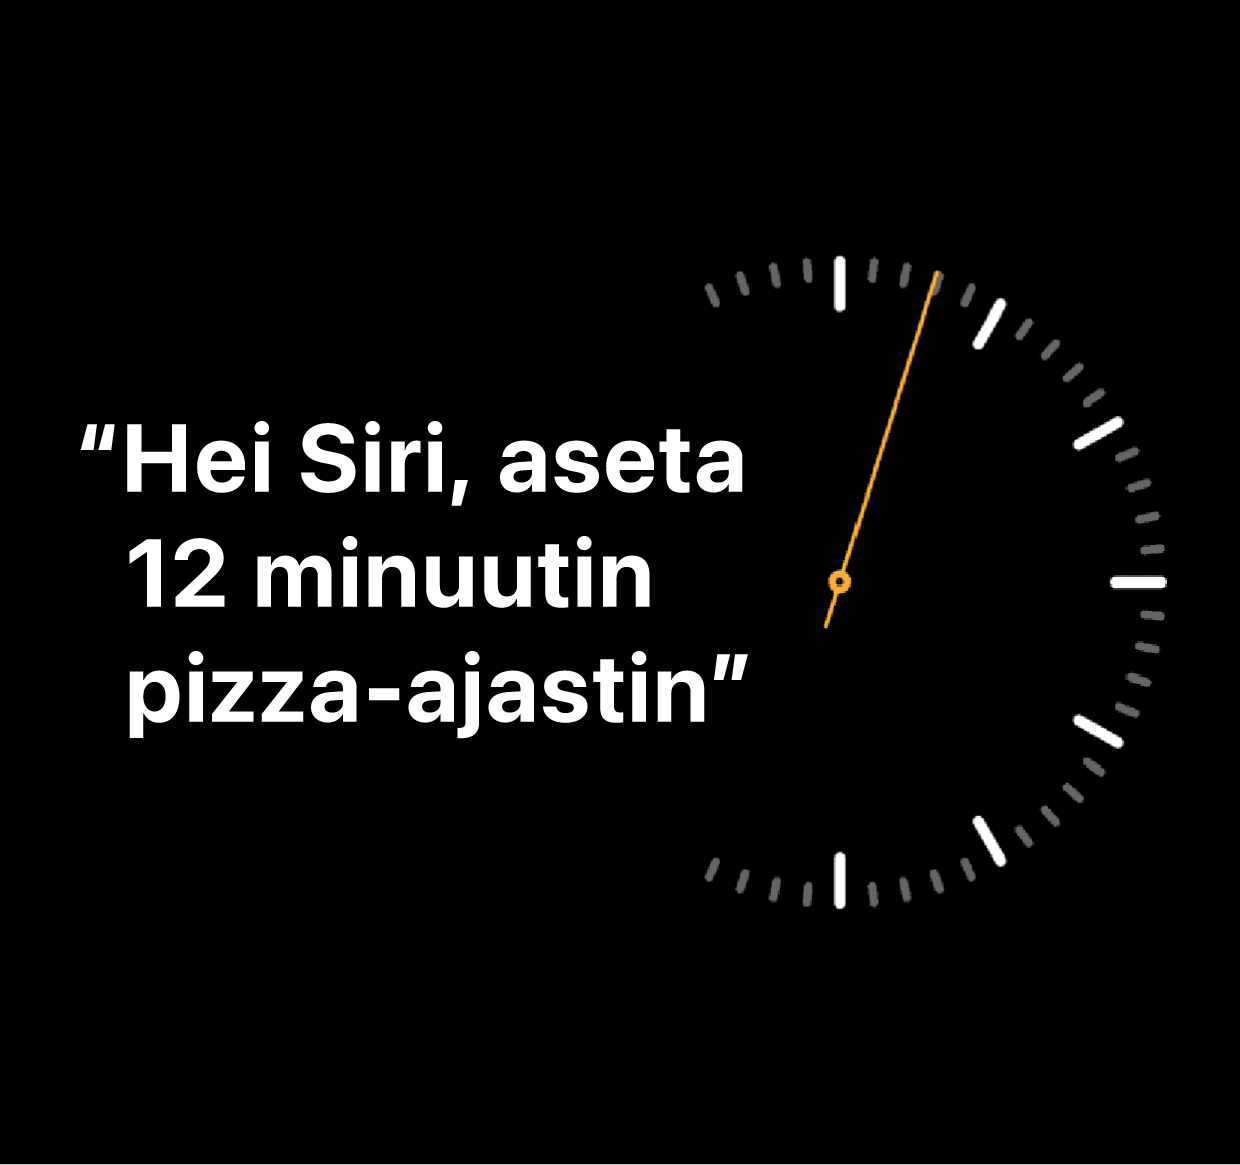 Kuvailu sanoista ”Hei Siri, aseta pizza-ajastin 12 minuuttia”